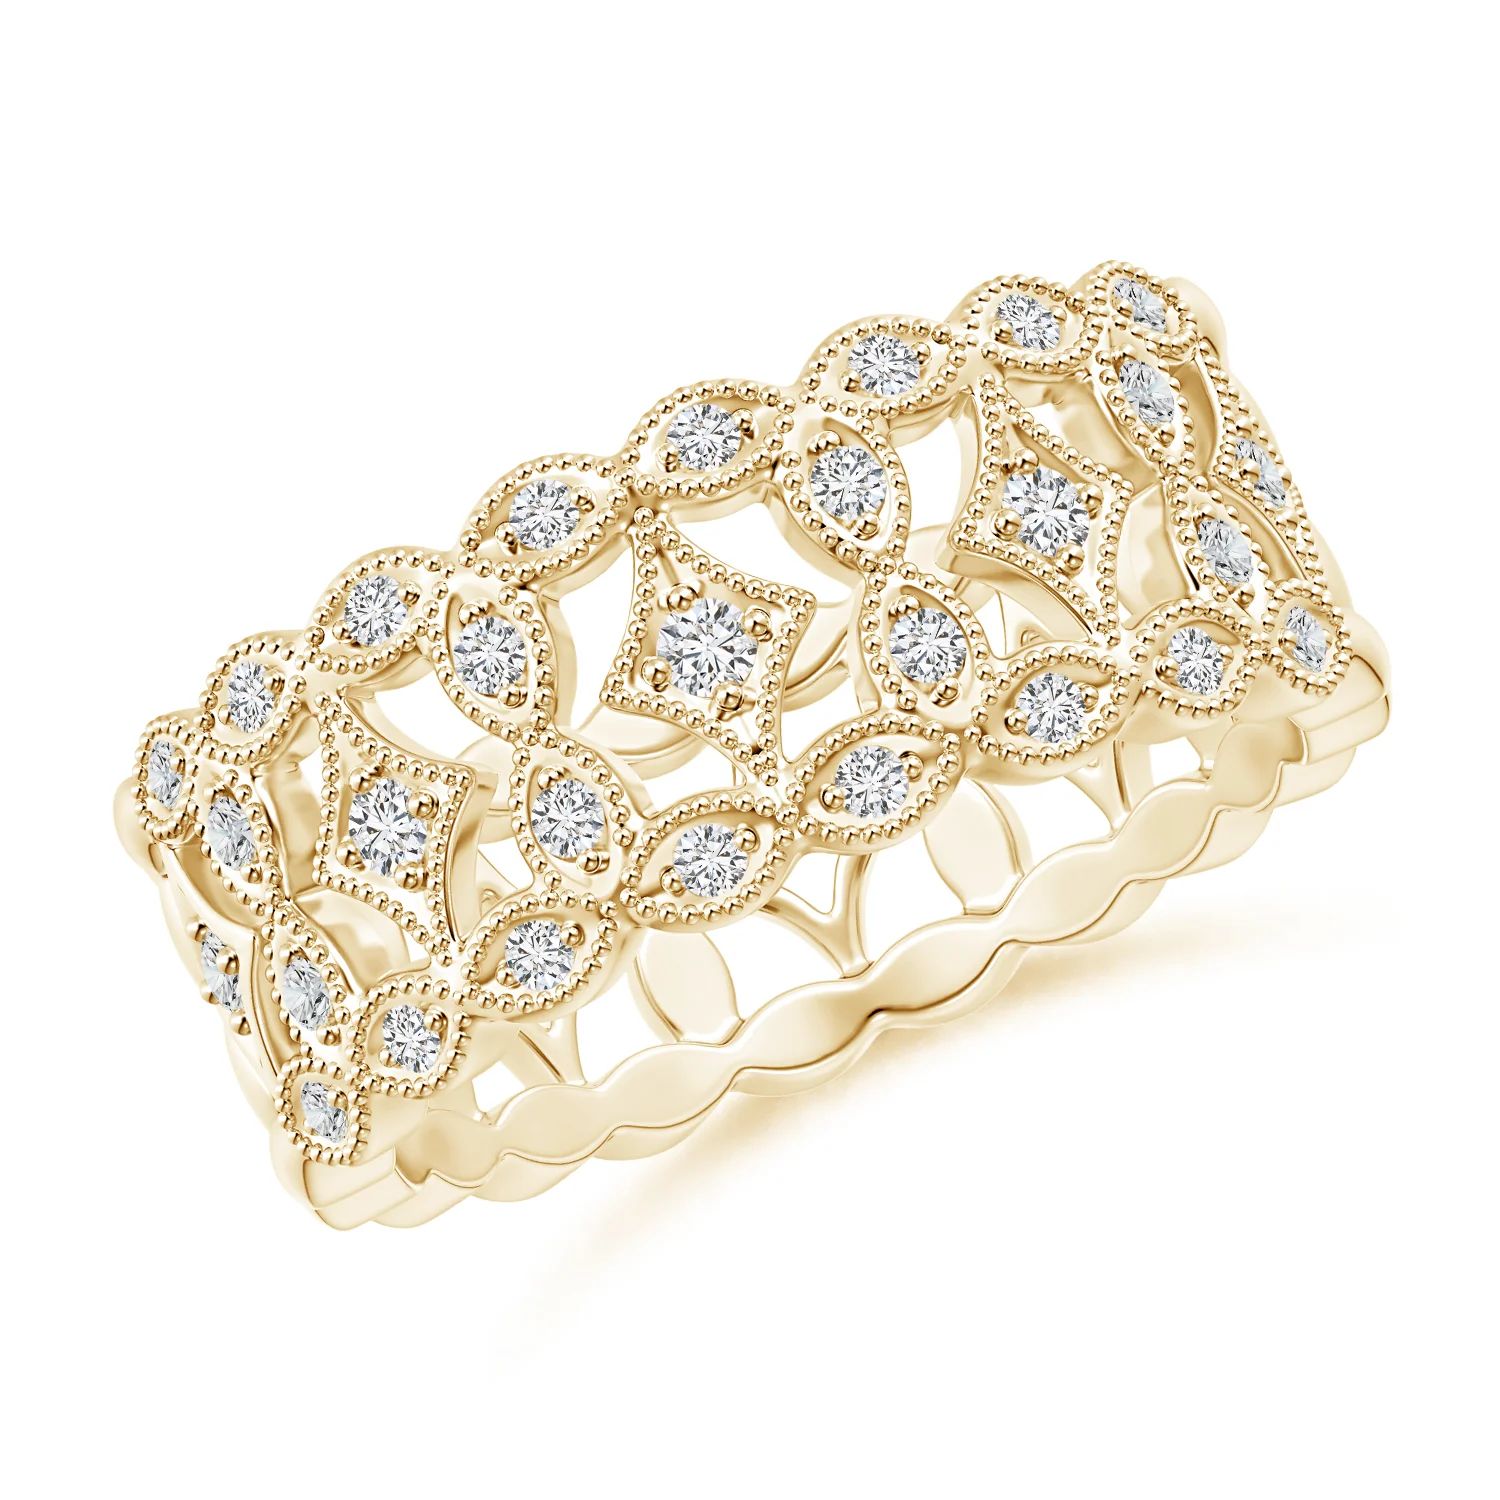 Art Deco Inspired Filigree Diamond Wedding Ring | Angara | Angara US